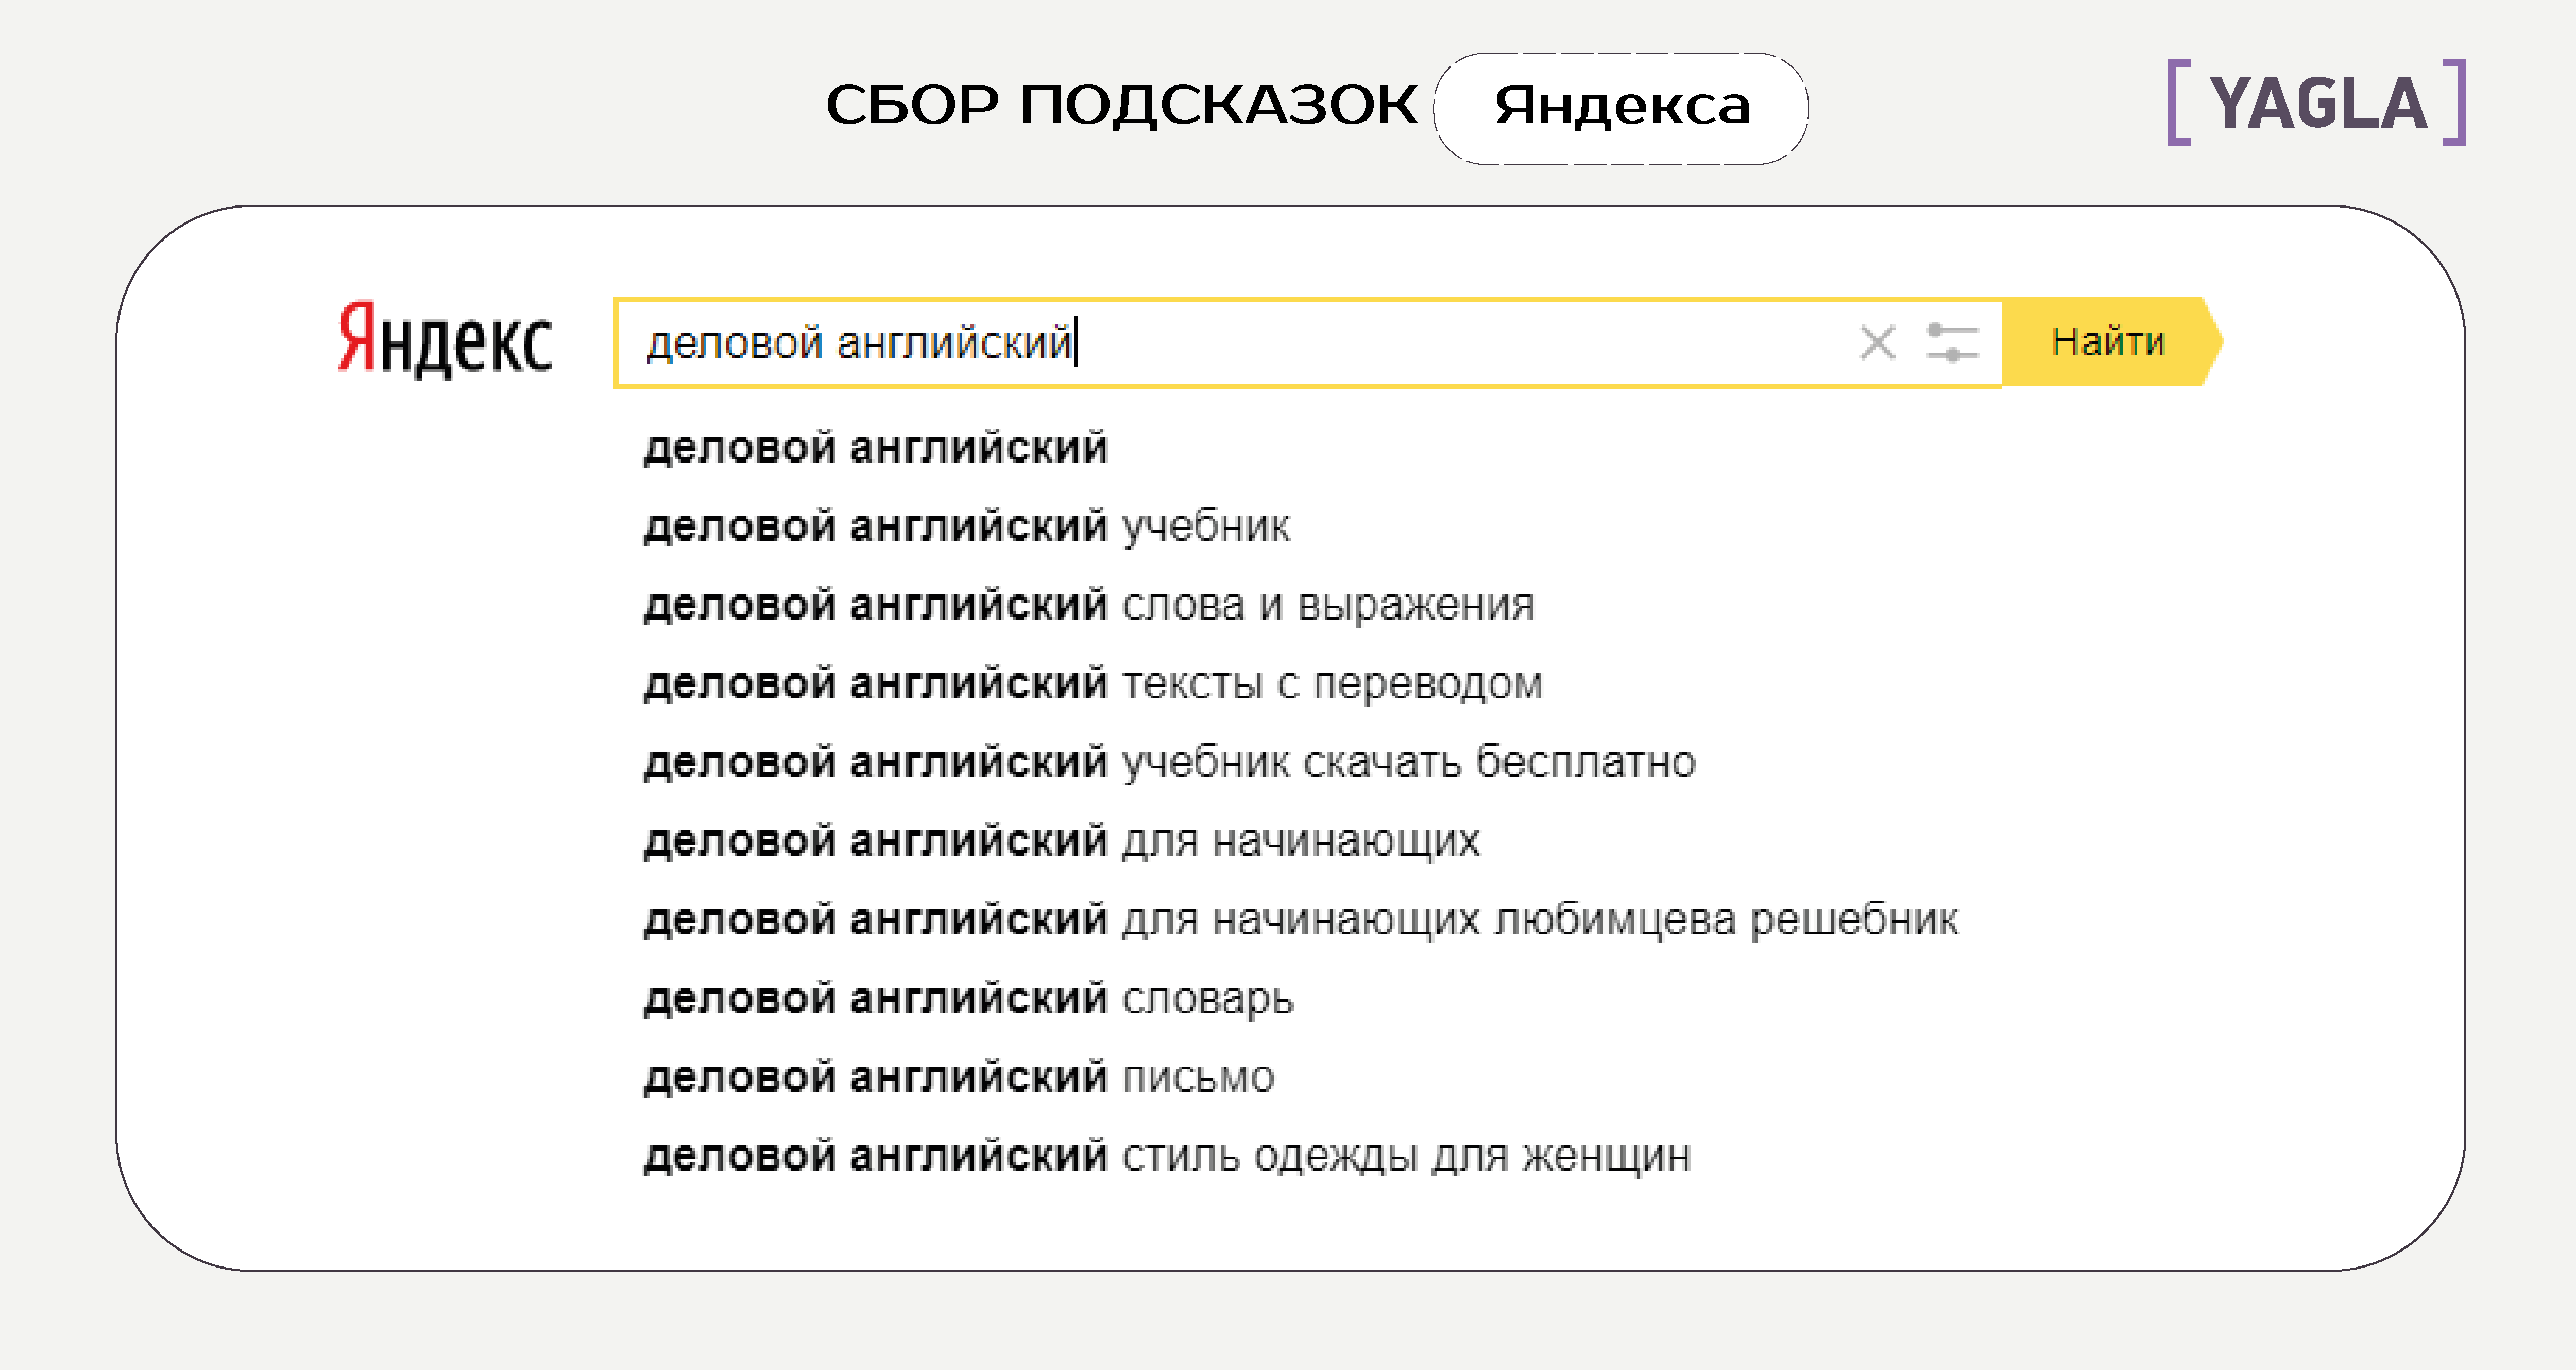 Сбор подсказок Яндекса